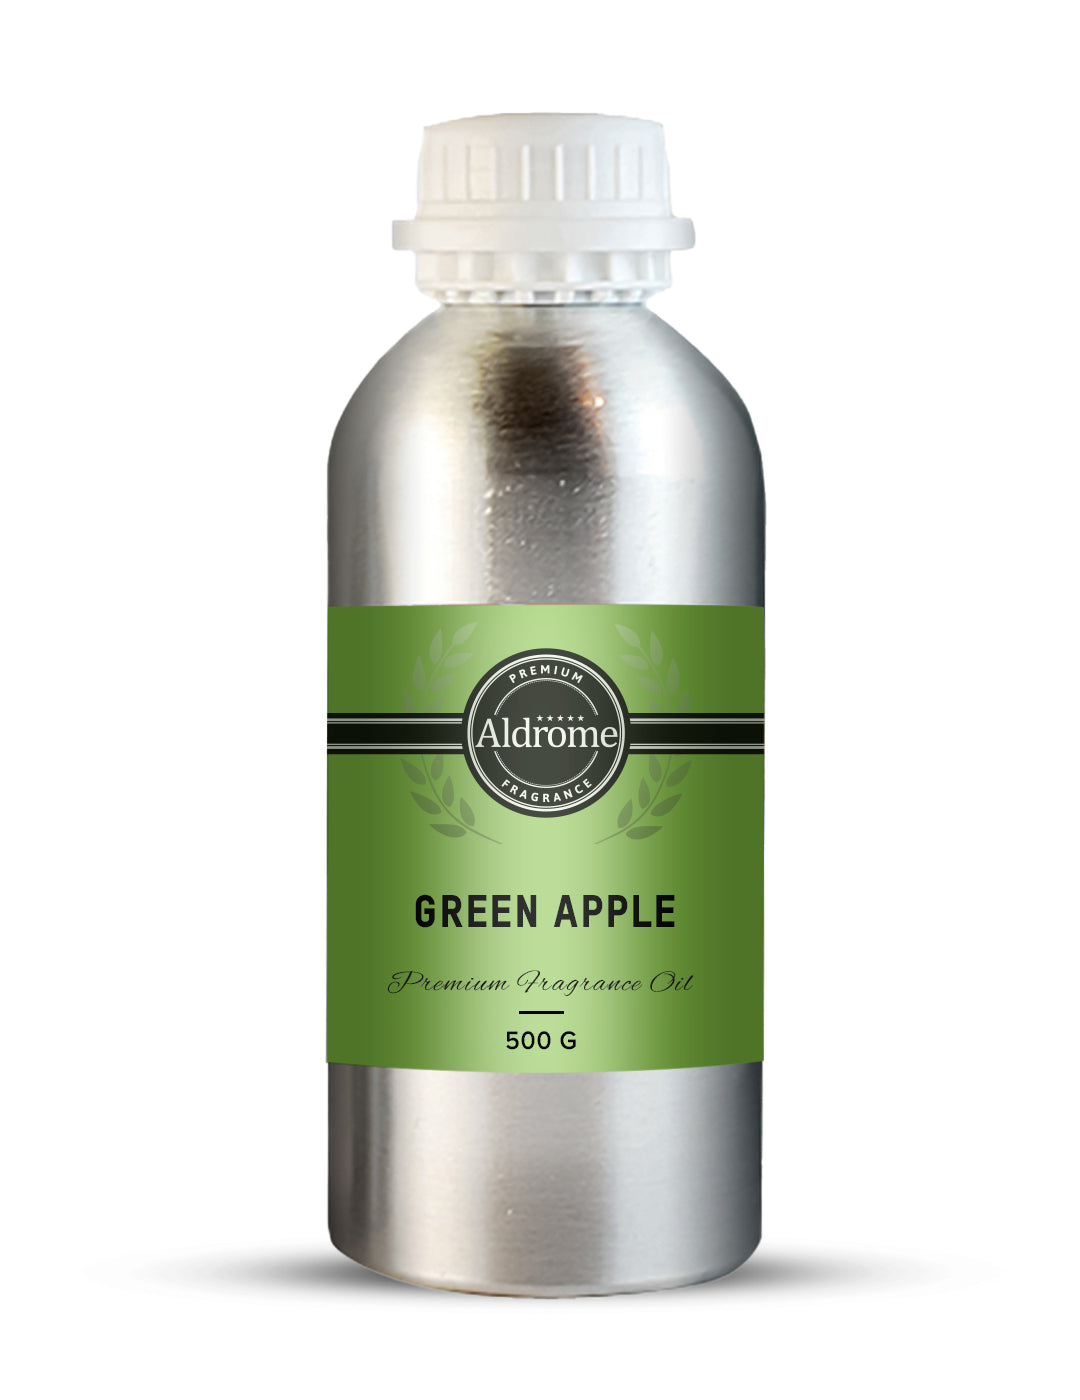 Green Apple Fragrance Oil - 500 G | Buy Green Apple Fragrance Oil | Aldrome Premium Fragrance Oil